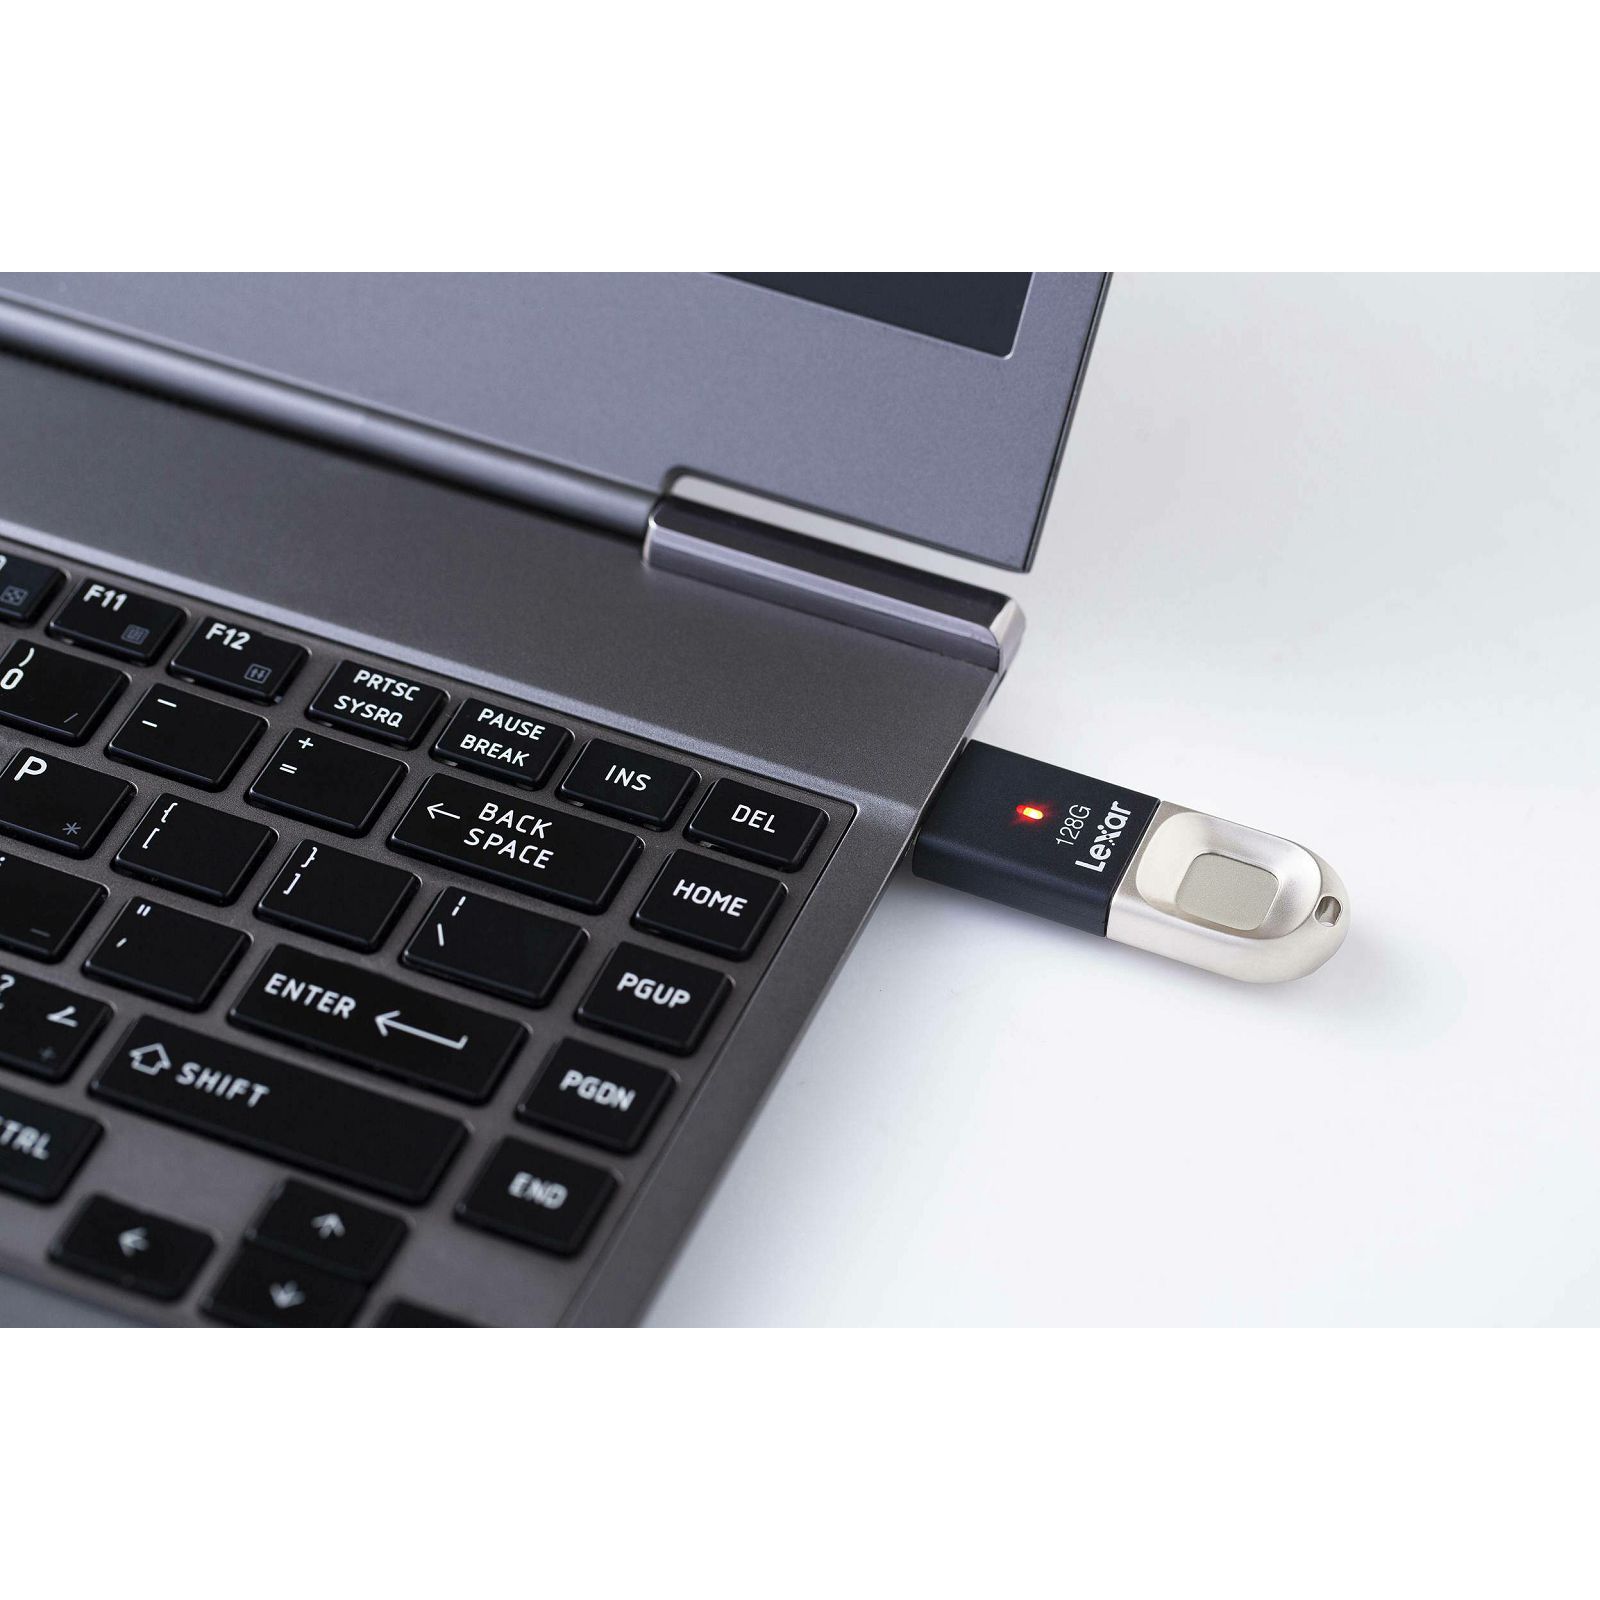 Lexar Fingerprint F35 128GB USB 3.0 flash drive 150MB/s read 60MB/s write memorija (LJDF35-128BBK)